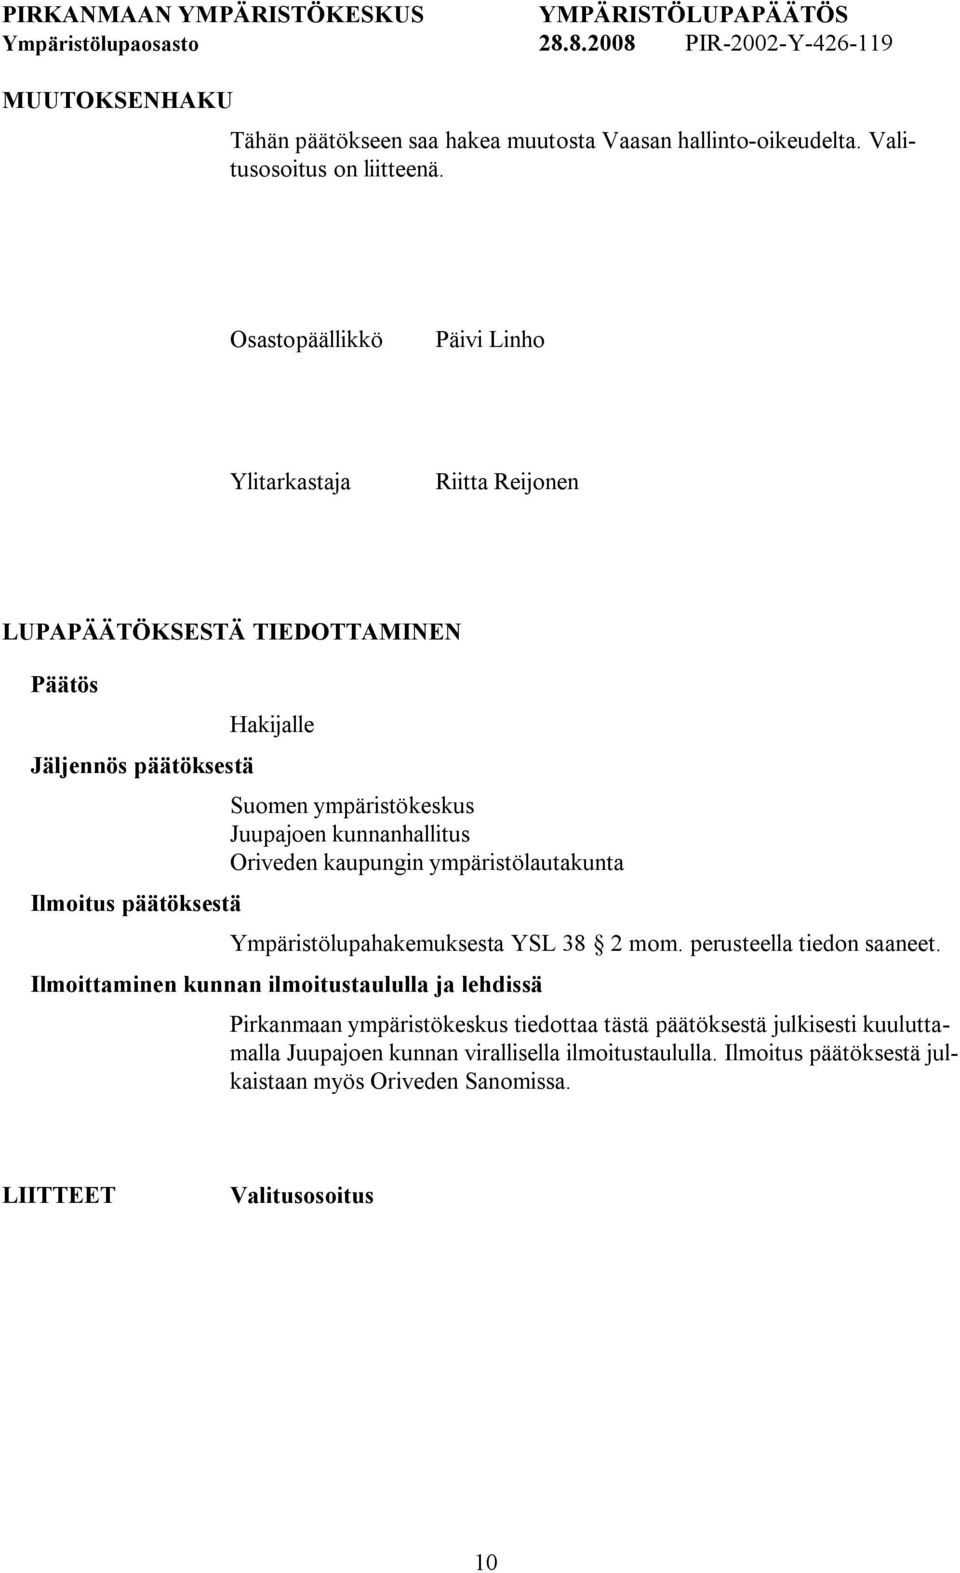 ympäristökeskus Juupajoen kunnanhallitus Oriveden kaupungin ympäristölautakunta Ympäristölupahakemuksesta YSL 38 2 mom. perusteella tiedon saaneet.